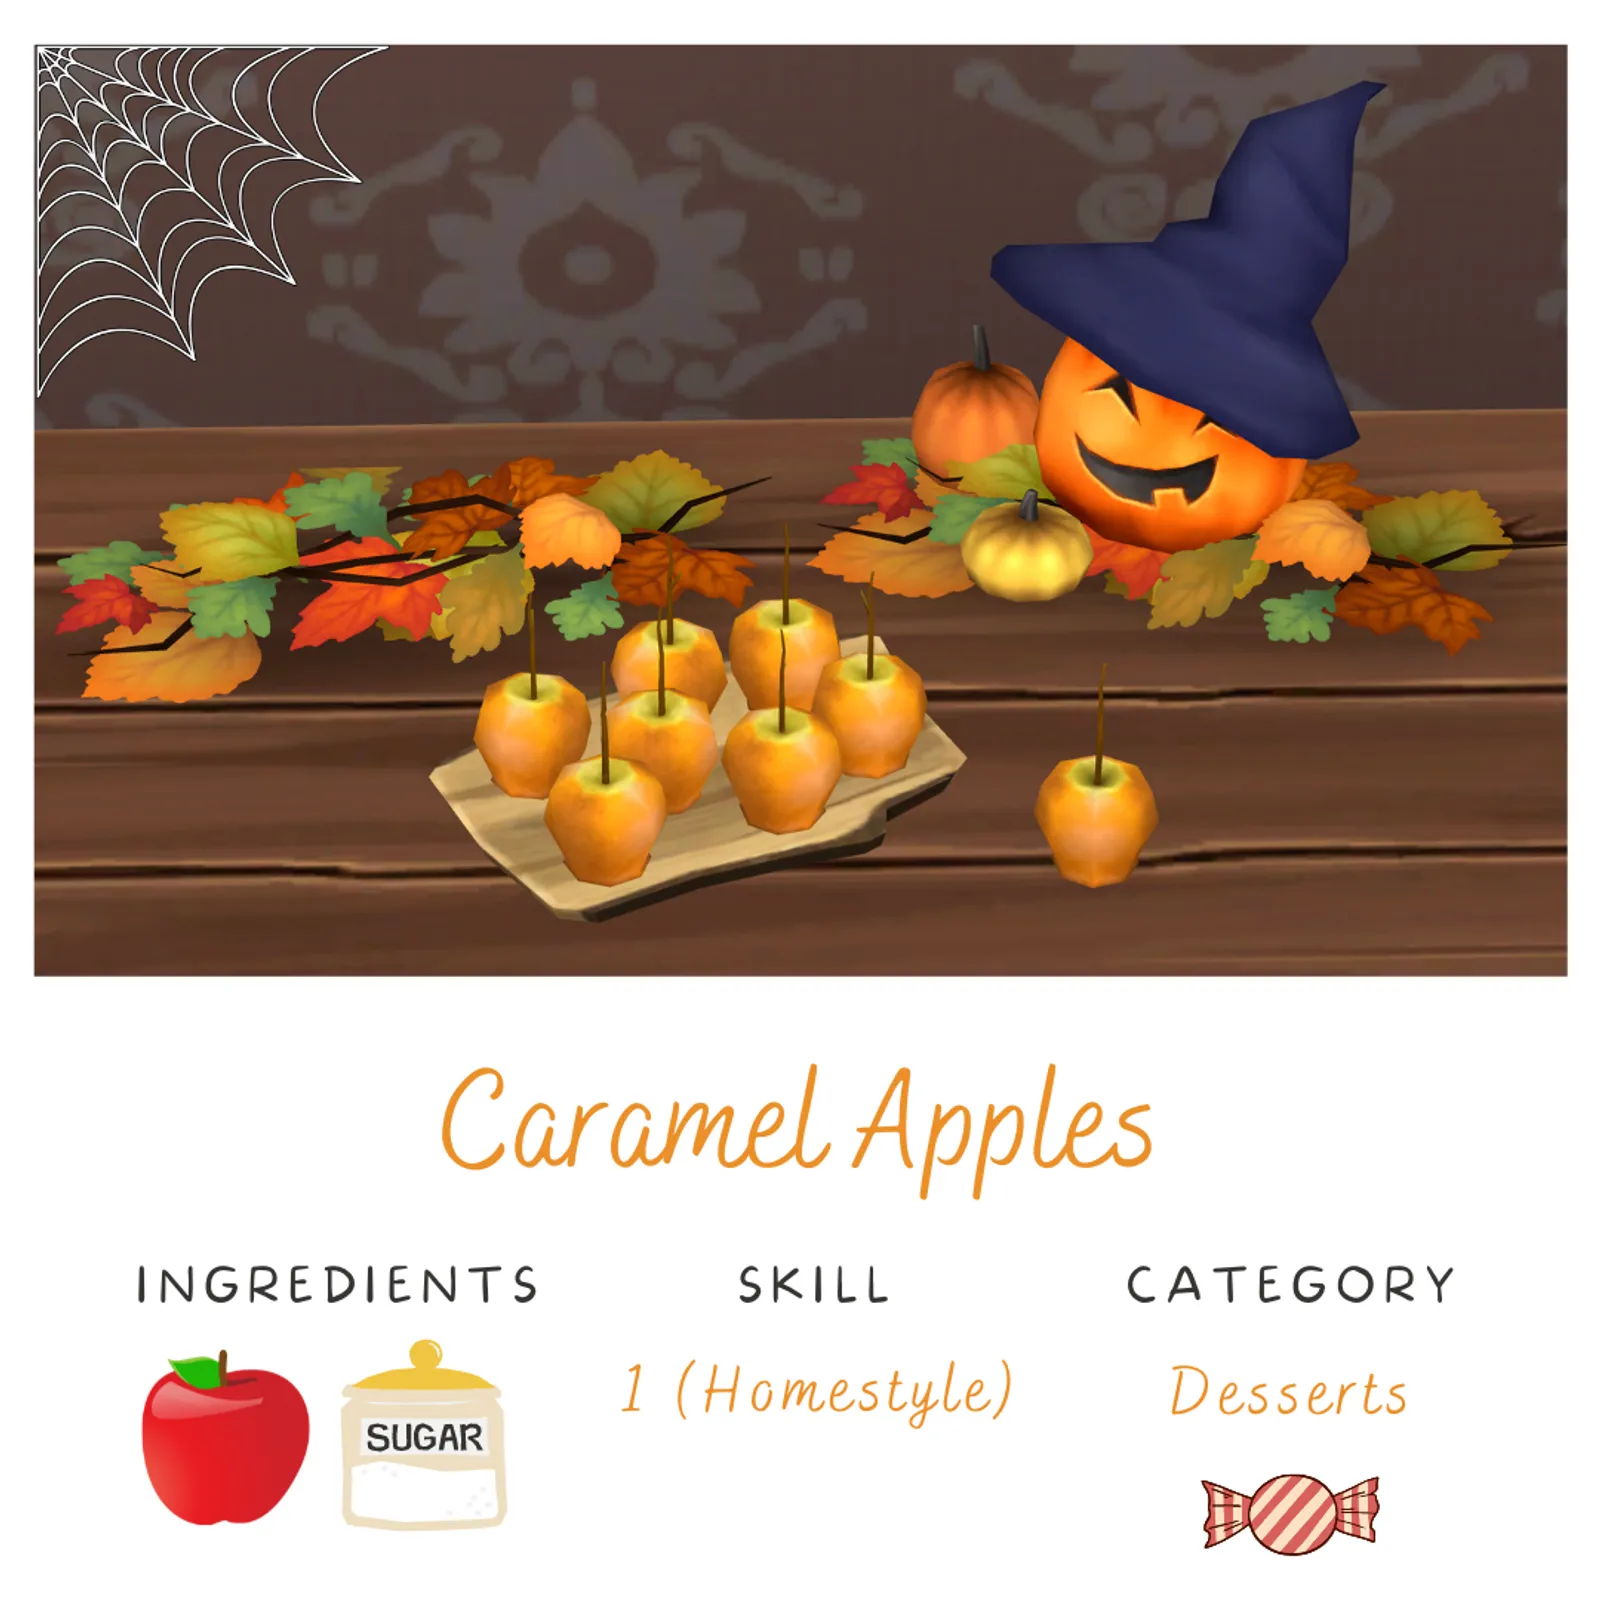 Caramel Apples - Simblreen Treat! 👻